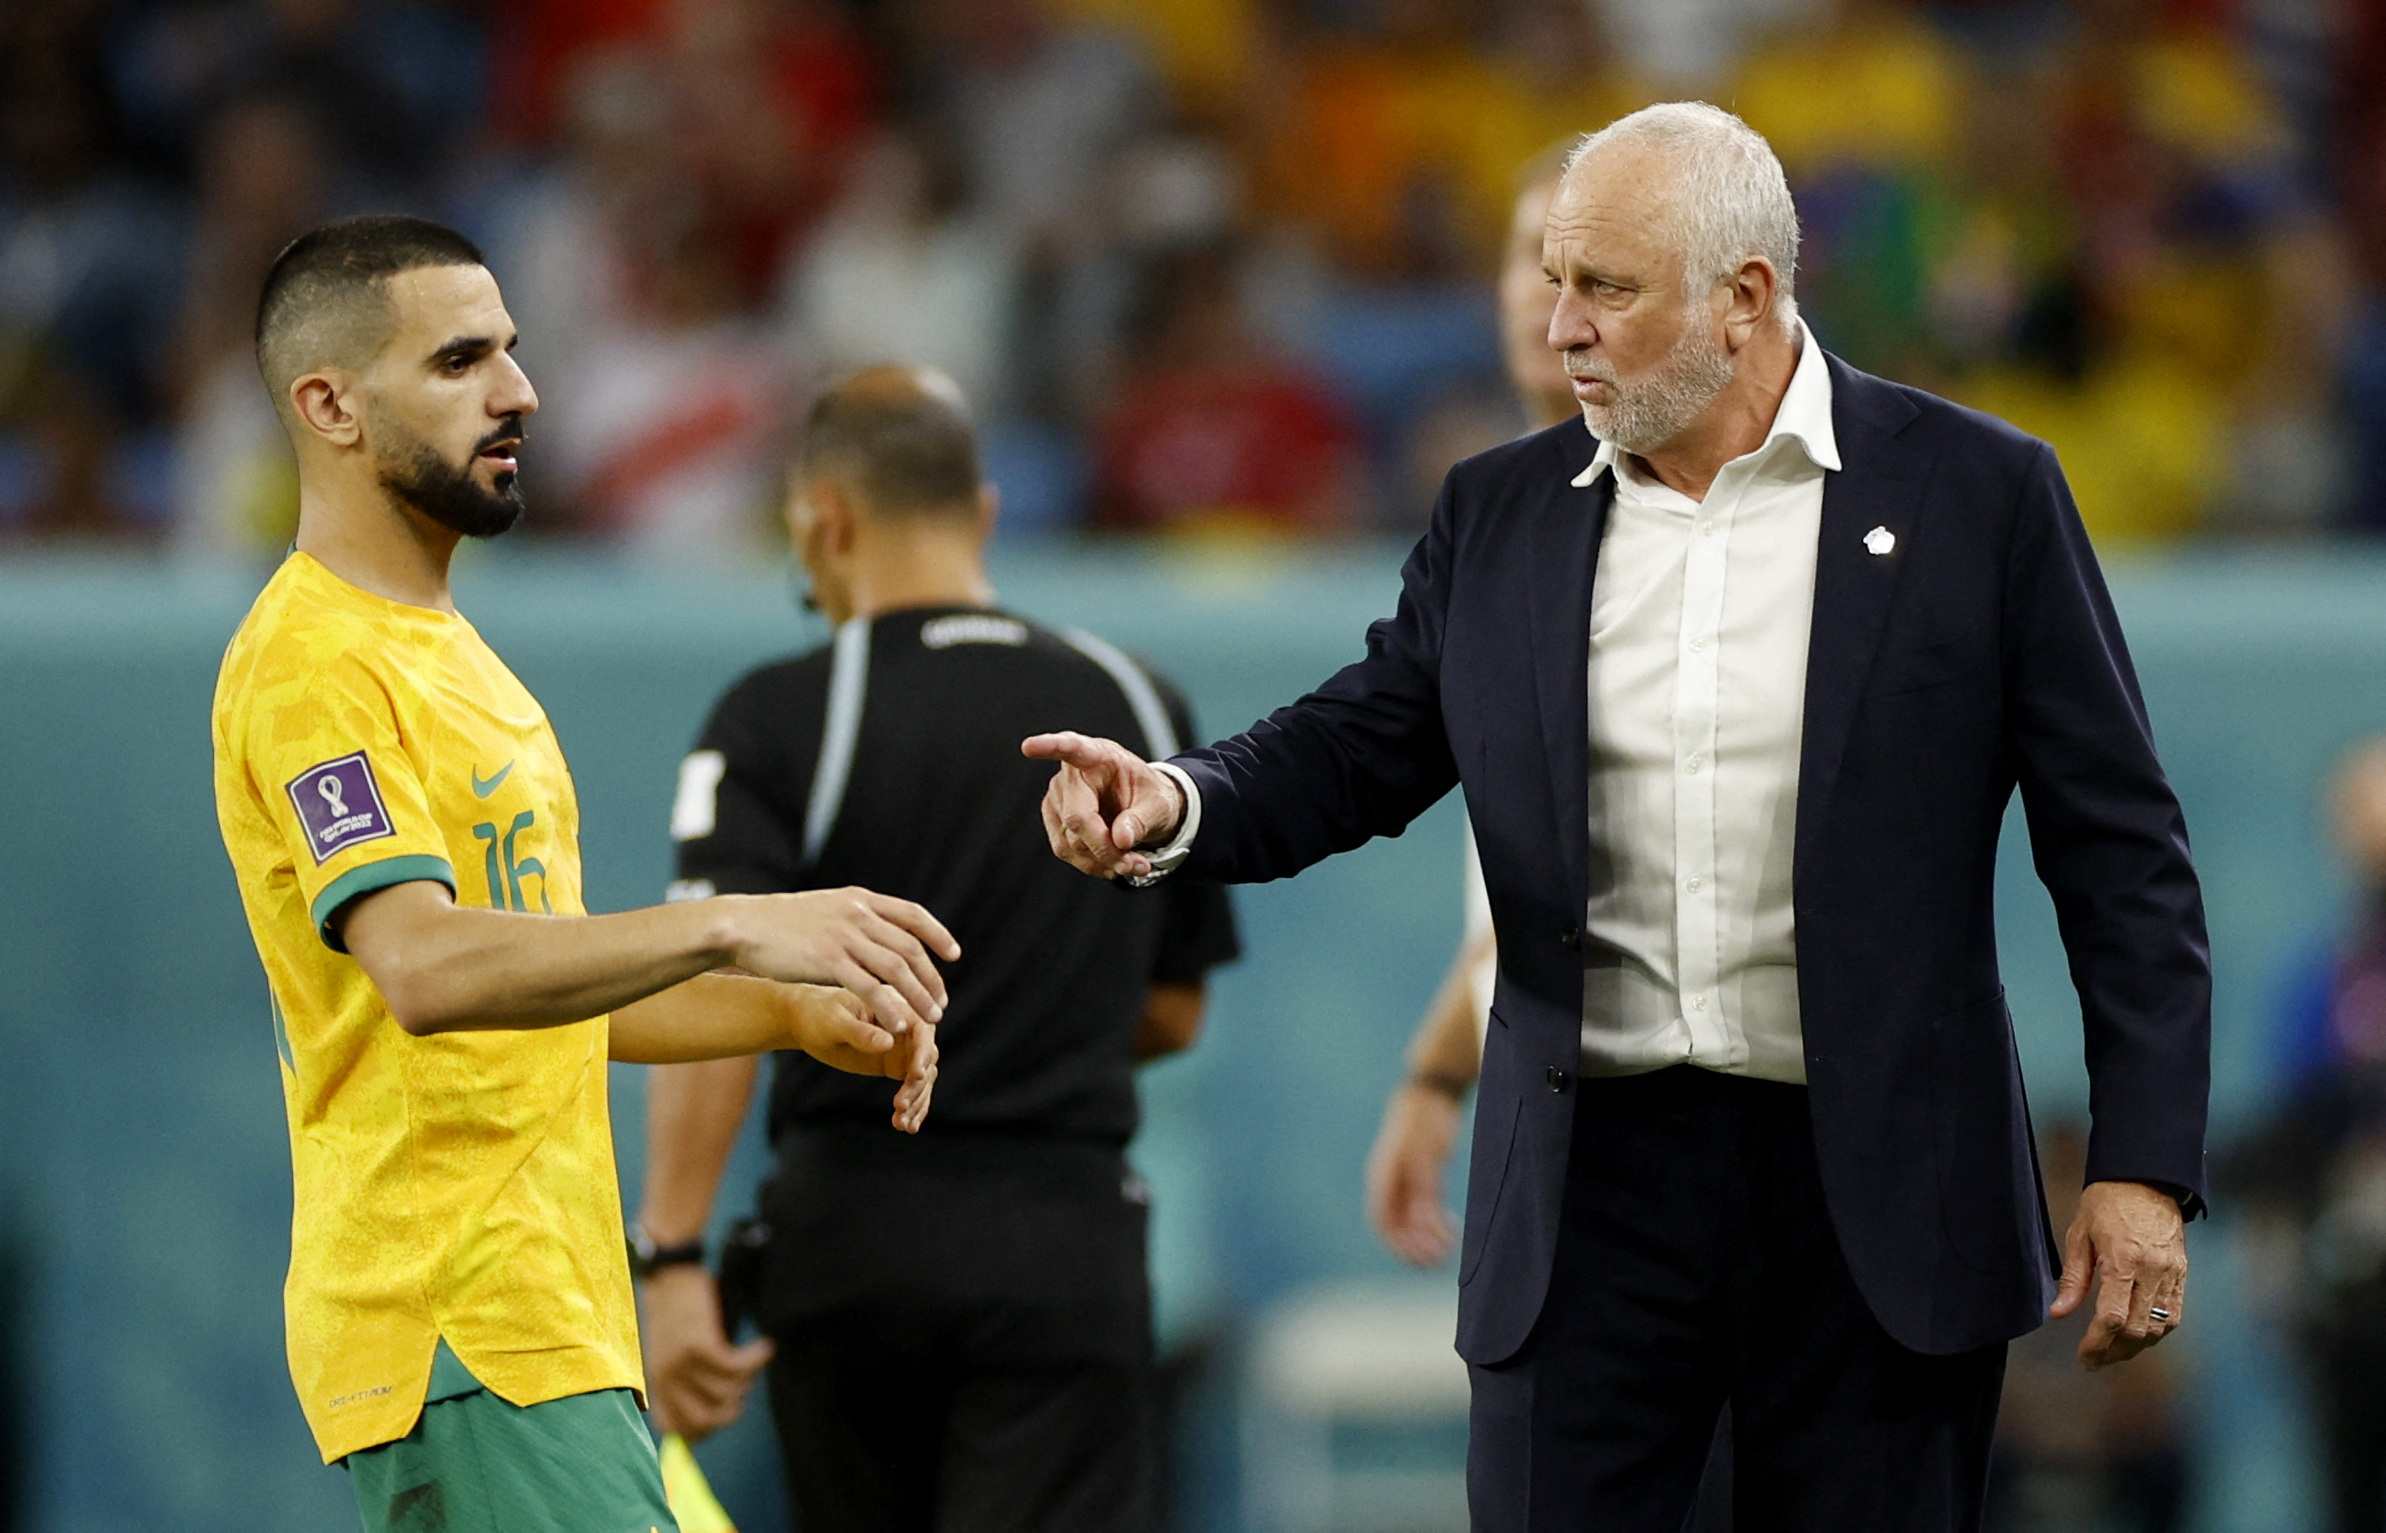 Graham Arnold tomó el cargo de seleccionador de Australia tras el Mundial 2018 (REUTERS)